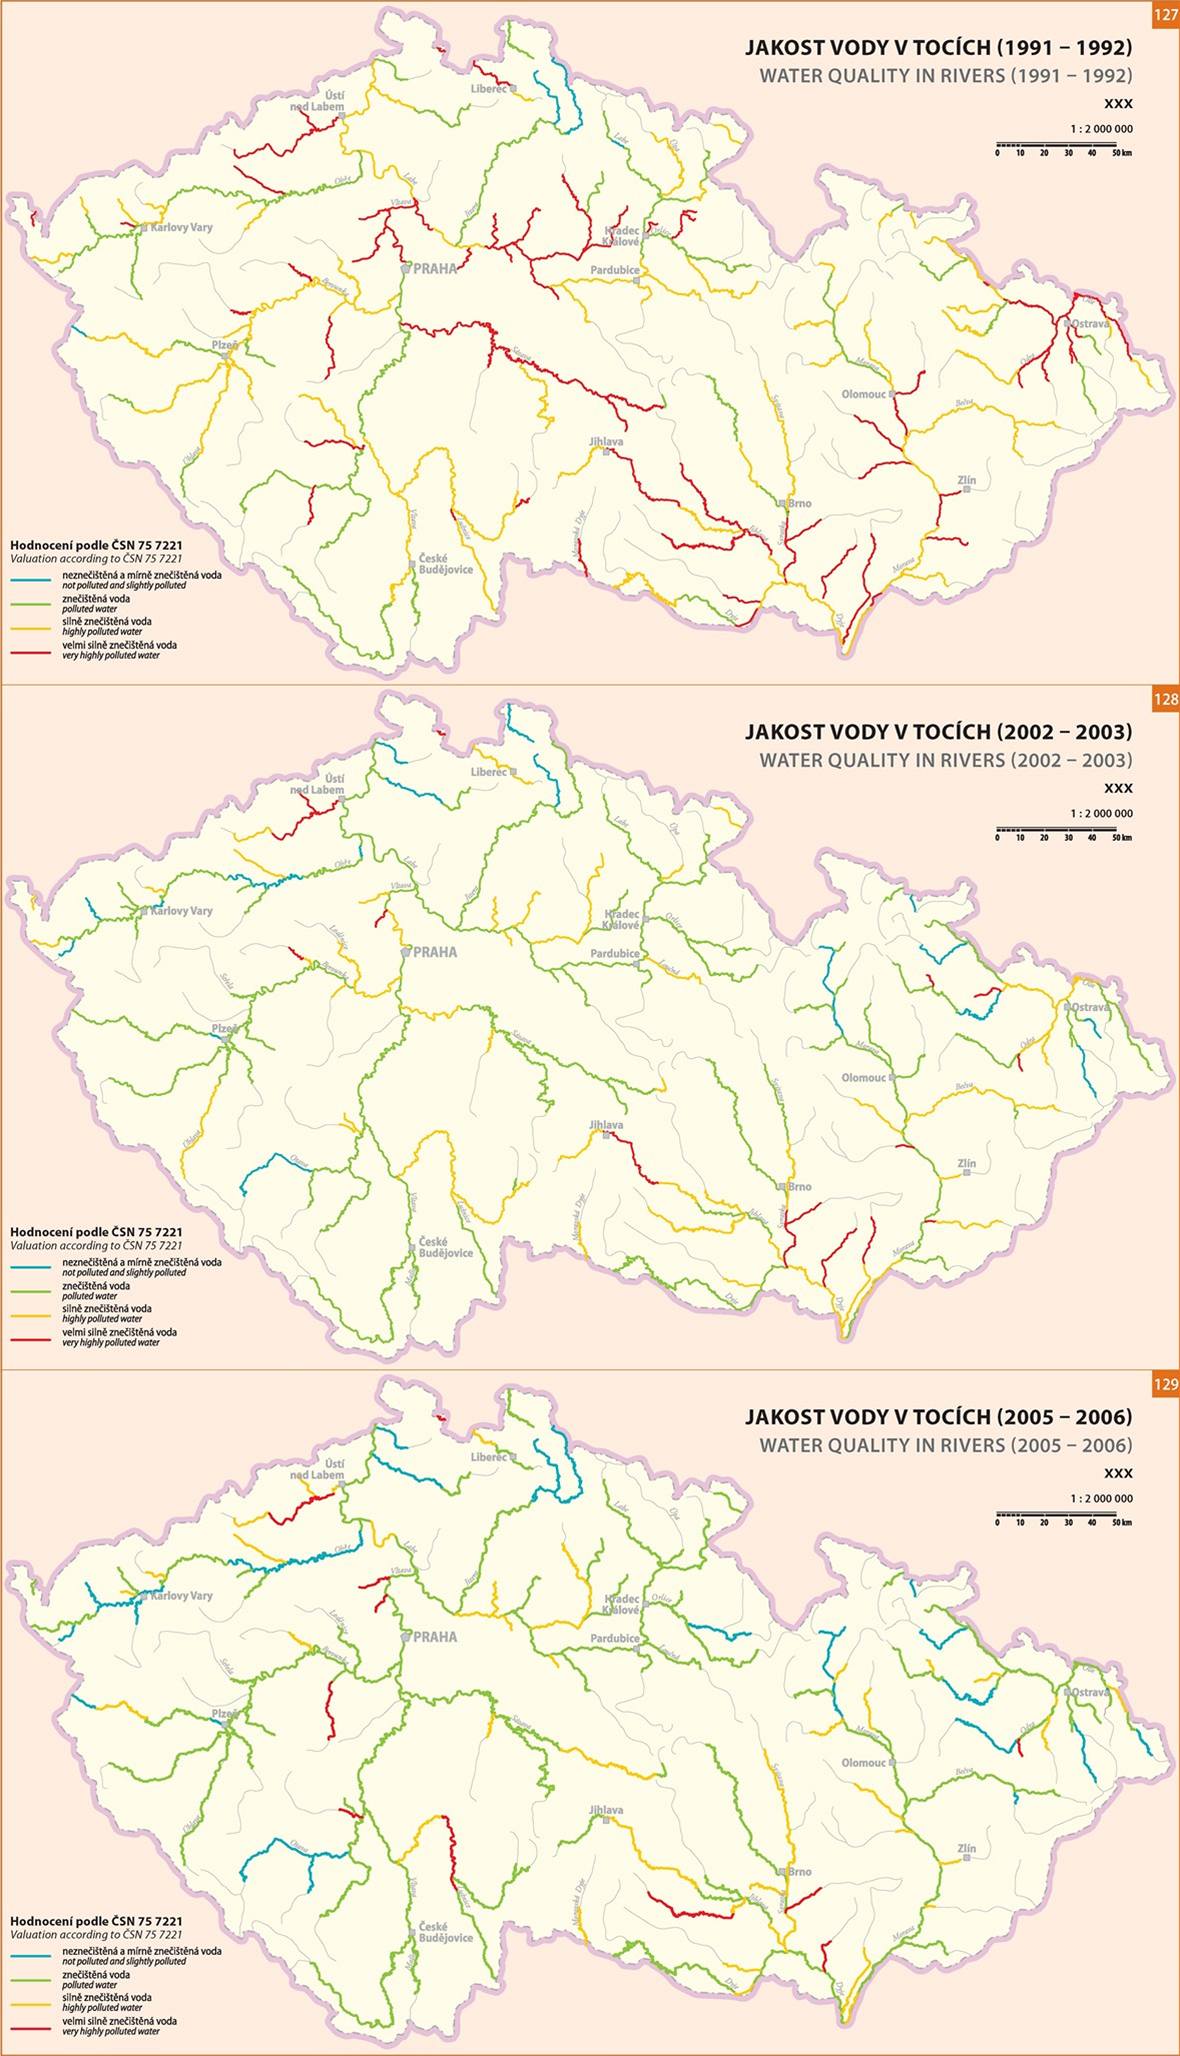 Atlas krajiny eské republiky - jakost vody v tocích.